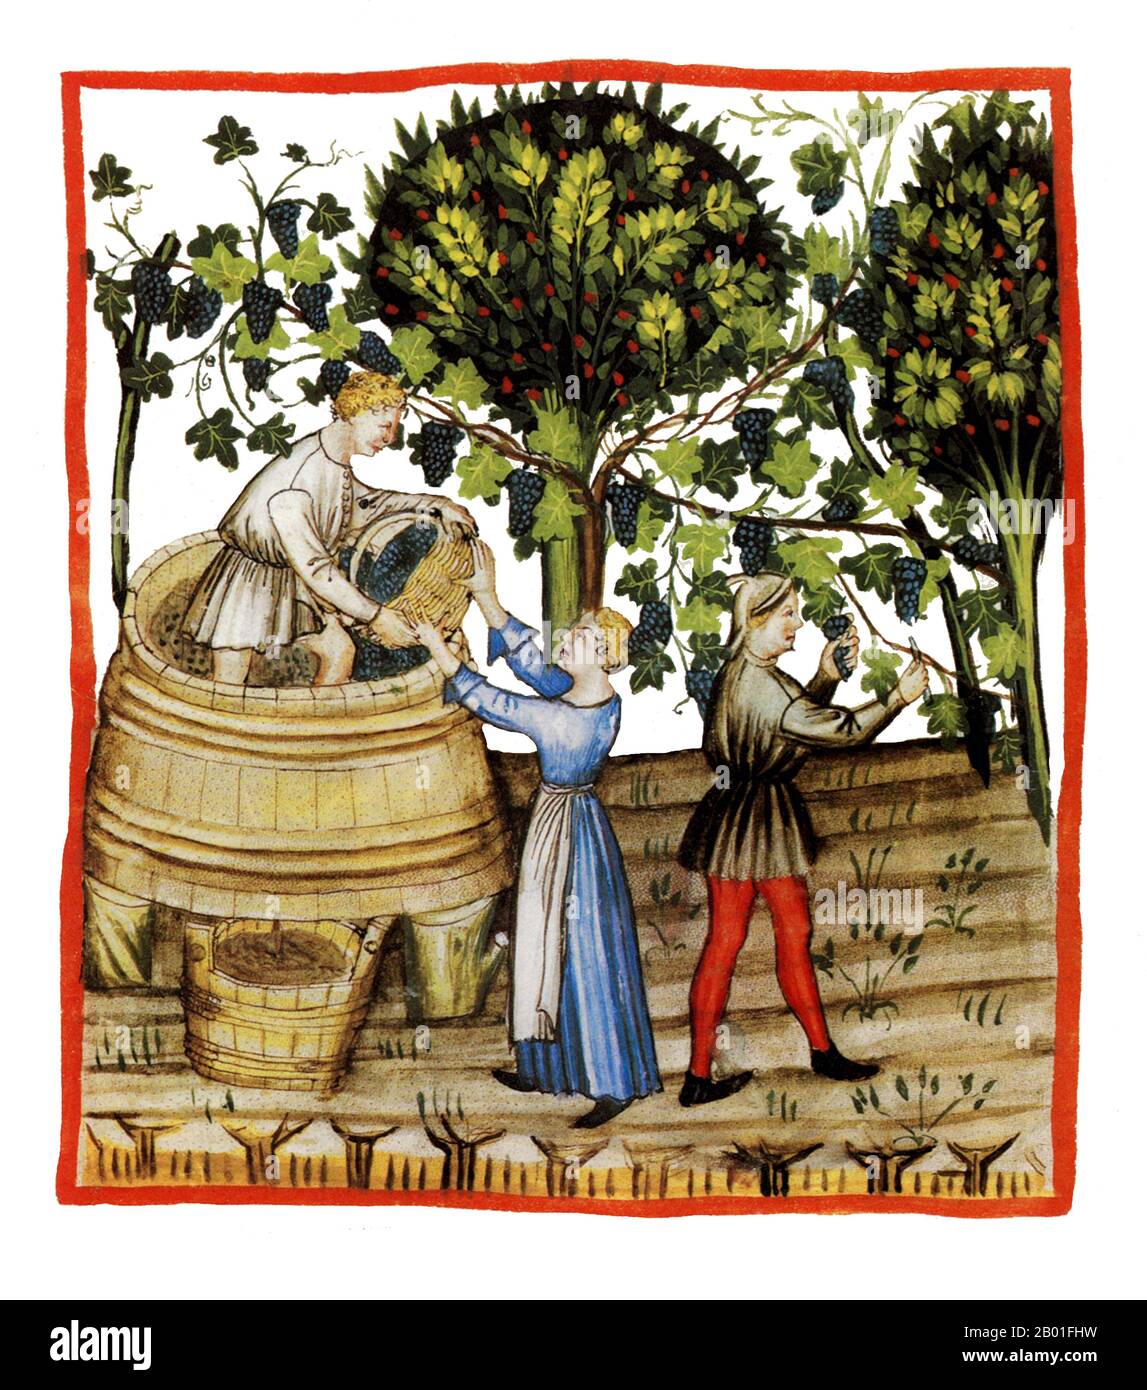 Irak/Italie: Automne - montrant la récolte du vin. Illustration de Taqwim al-sihha d'Ibn Butlan, ou « Maintenance of Health » (Bagdad, 11th siècle), publiée en Italie sous le nom de The Tacuinum Sanitatis, 14th siècle. Le Tacuinum (parfois Taccuinum) Sanitatis est un manuel médiéval sur la santé et le bien-être, basé sur le Taqwim al-sihha تقويم الصحة ('Maintenance de la santé'), un traité médical arabe du XIe siècle par Ibn Butlan de Bagdad. Ibn Butlân est un médecin chrétien né à Bagdad et décédé en 1068. Banque D'Images